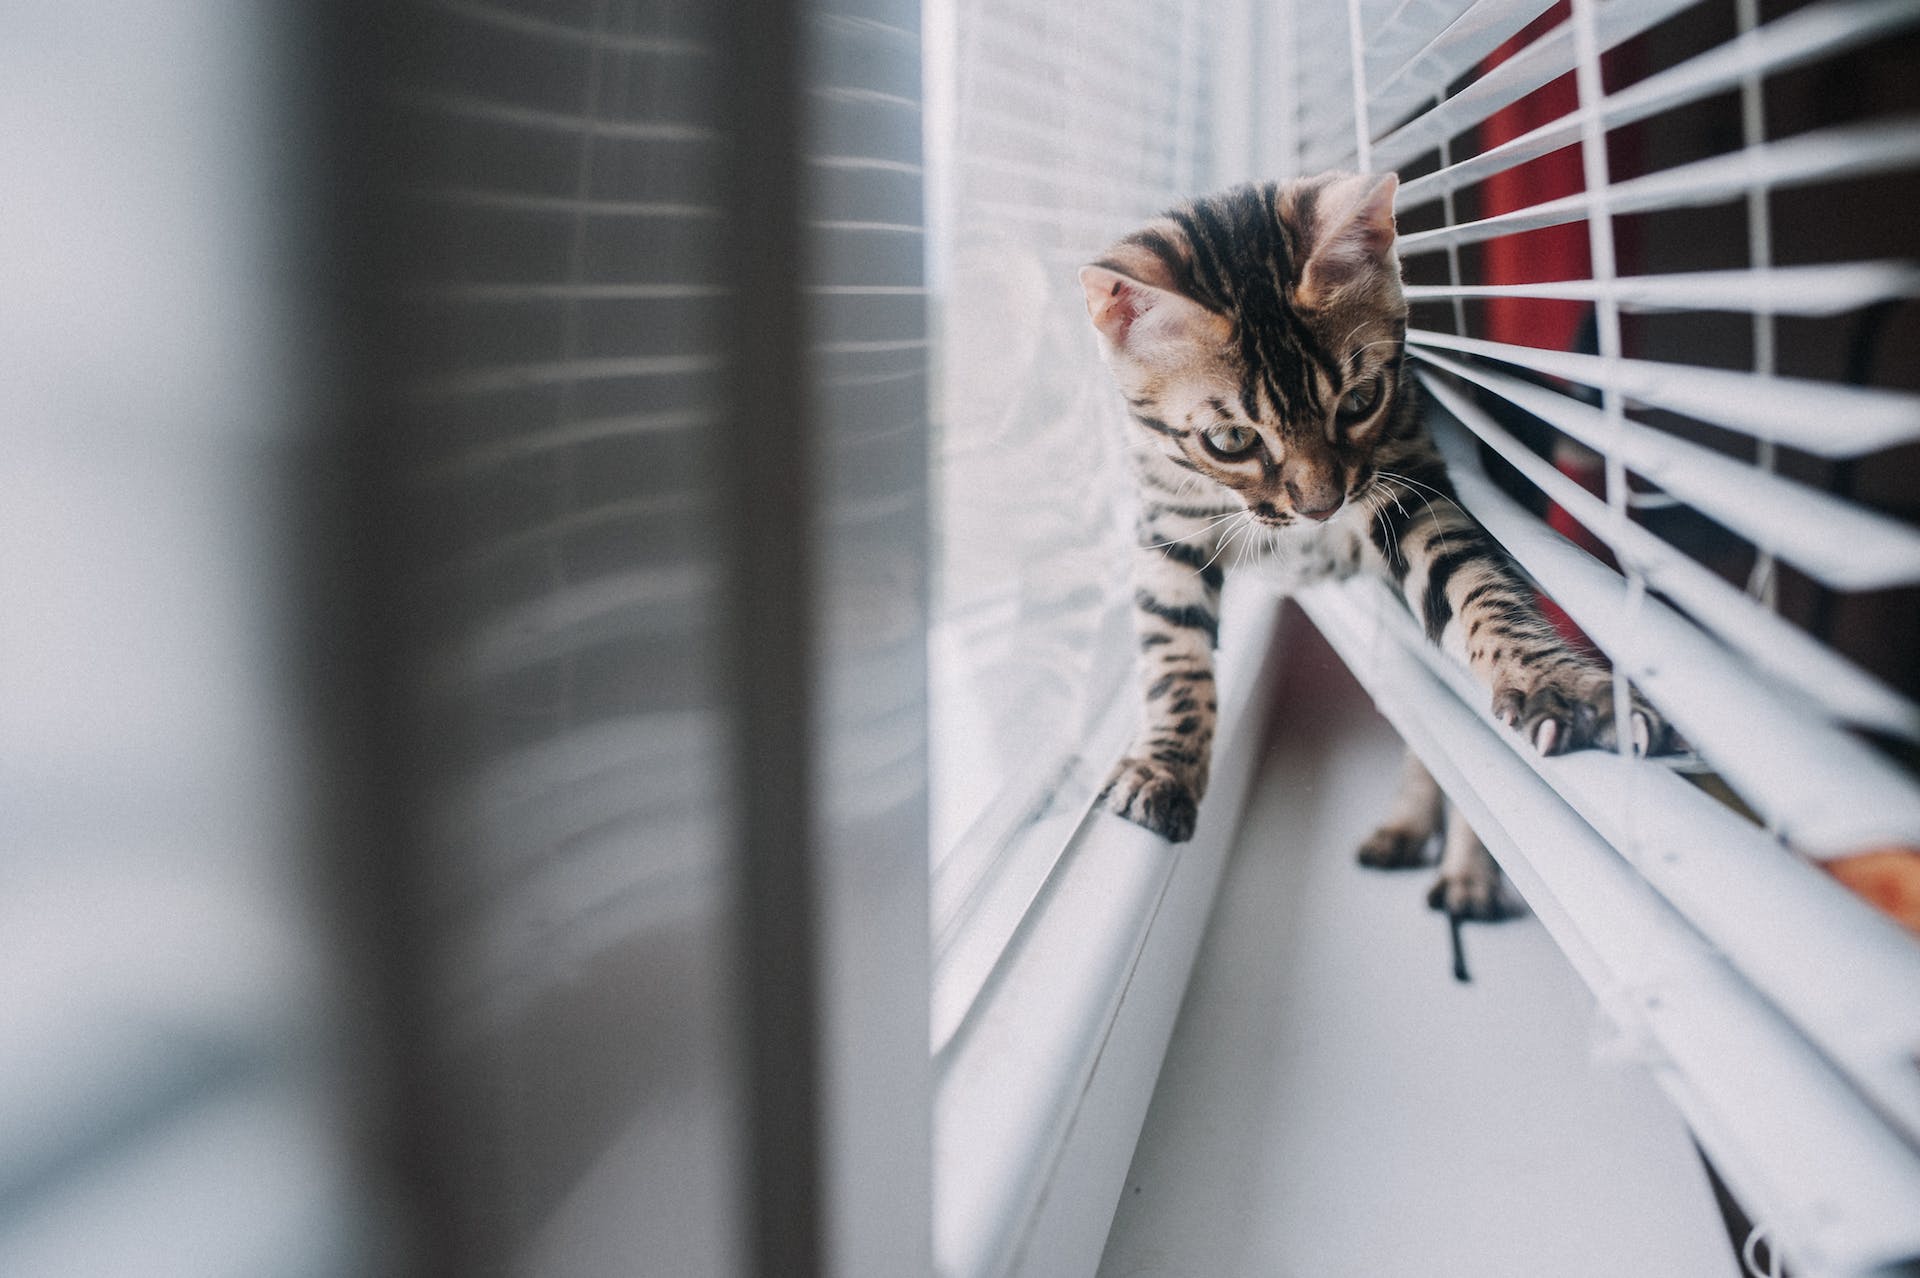 A Bengal kitten stuck in window blinds